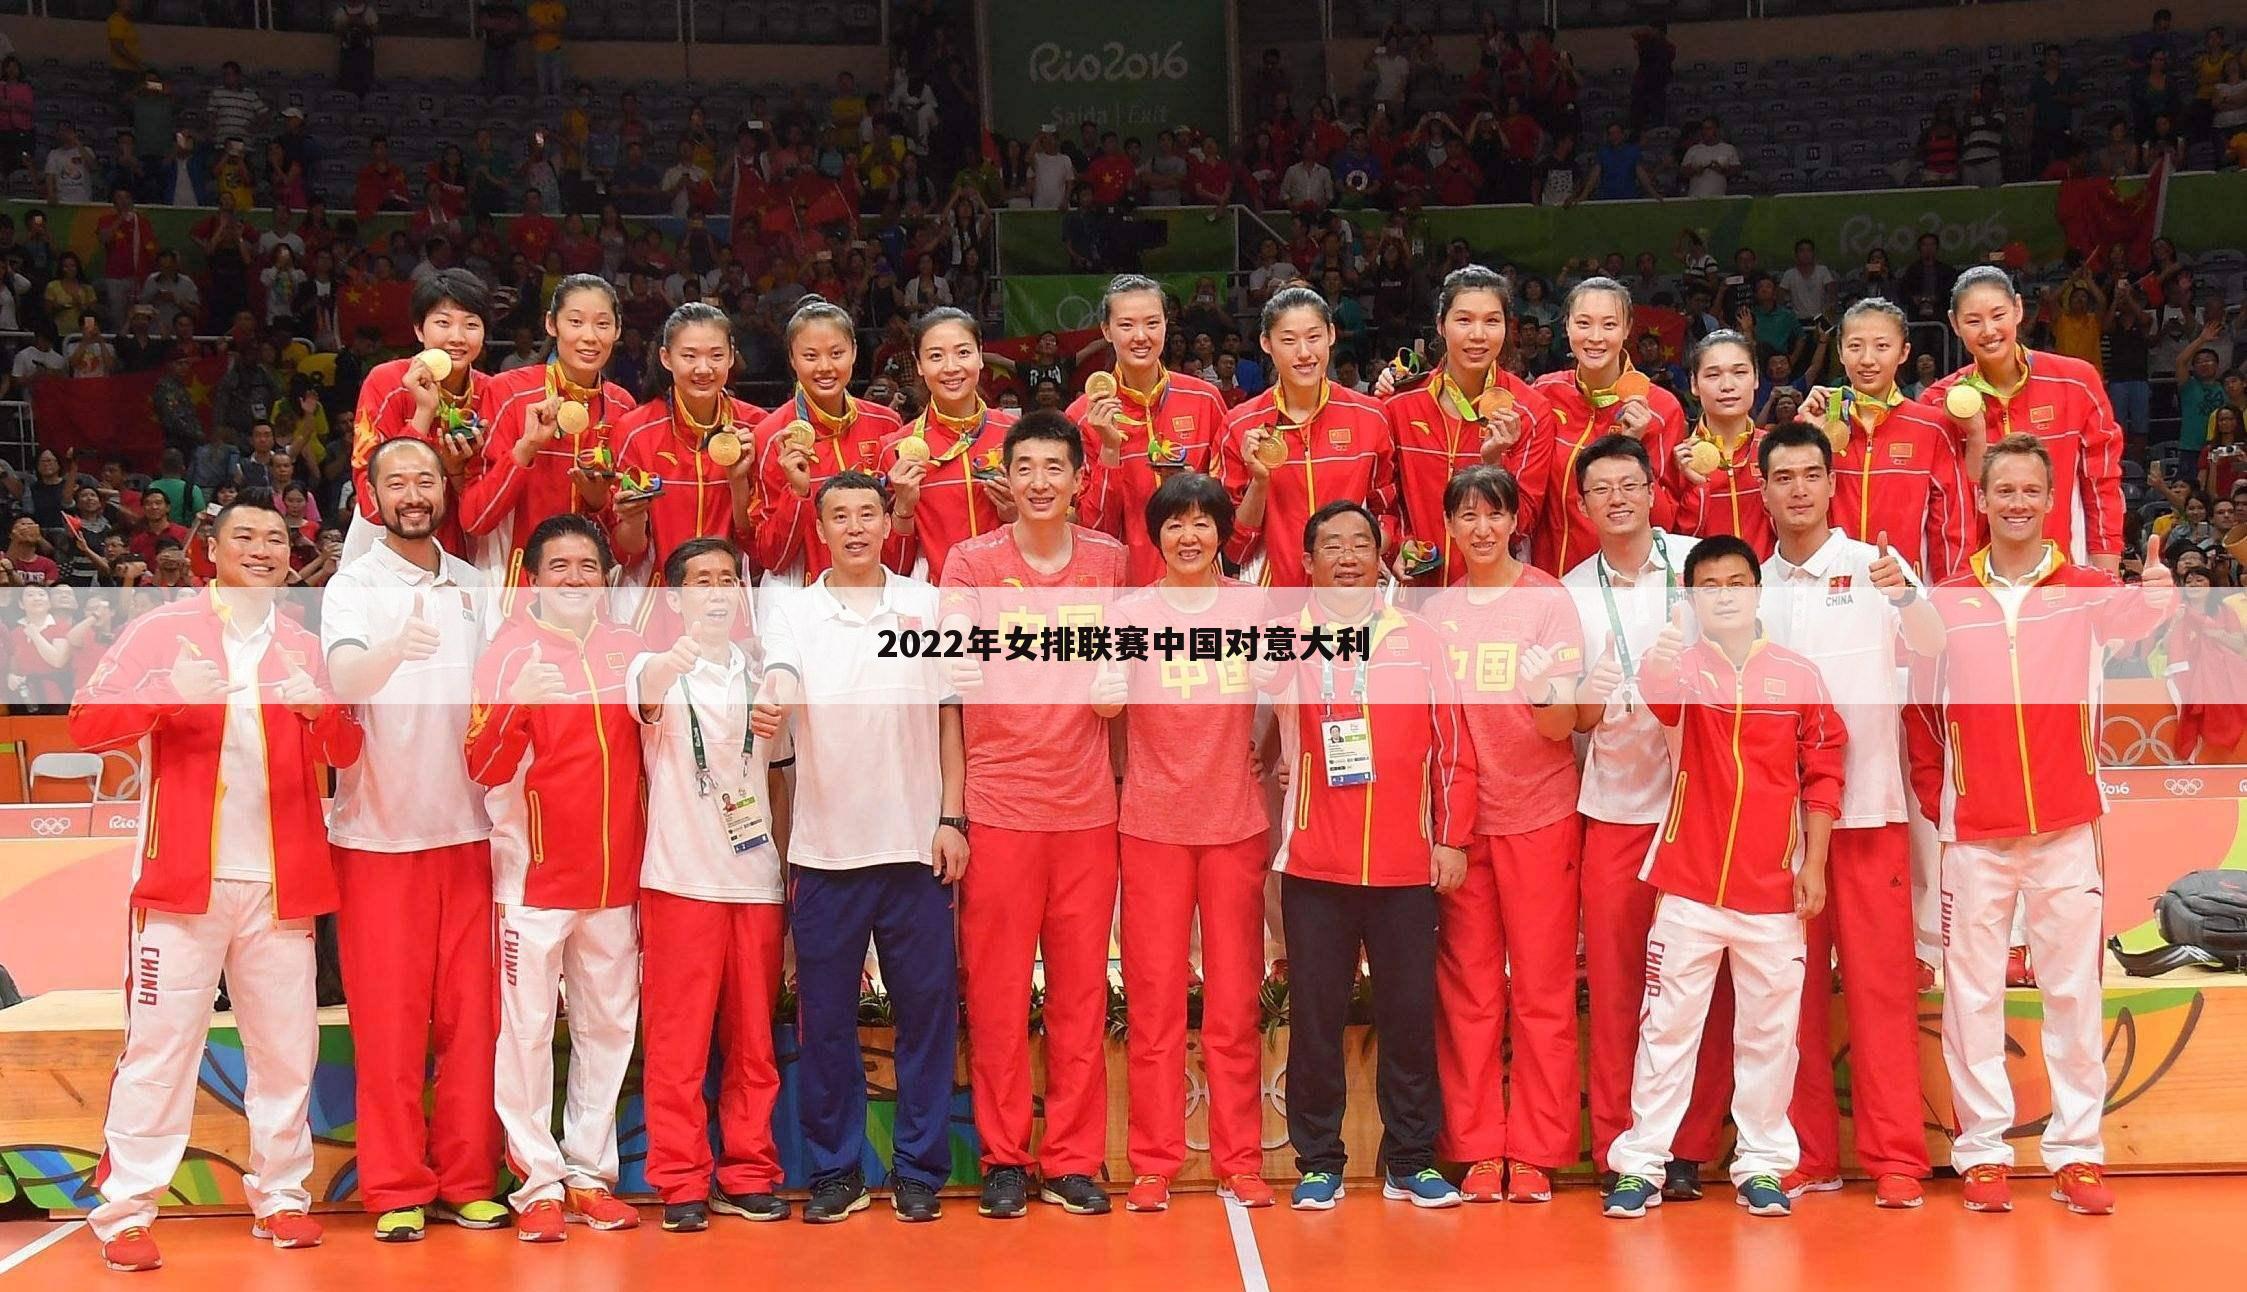 2022年女排联赛中国对意大利